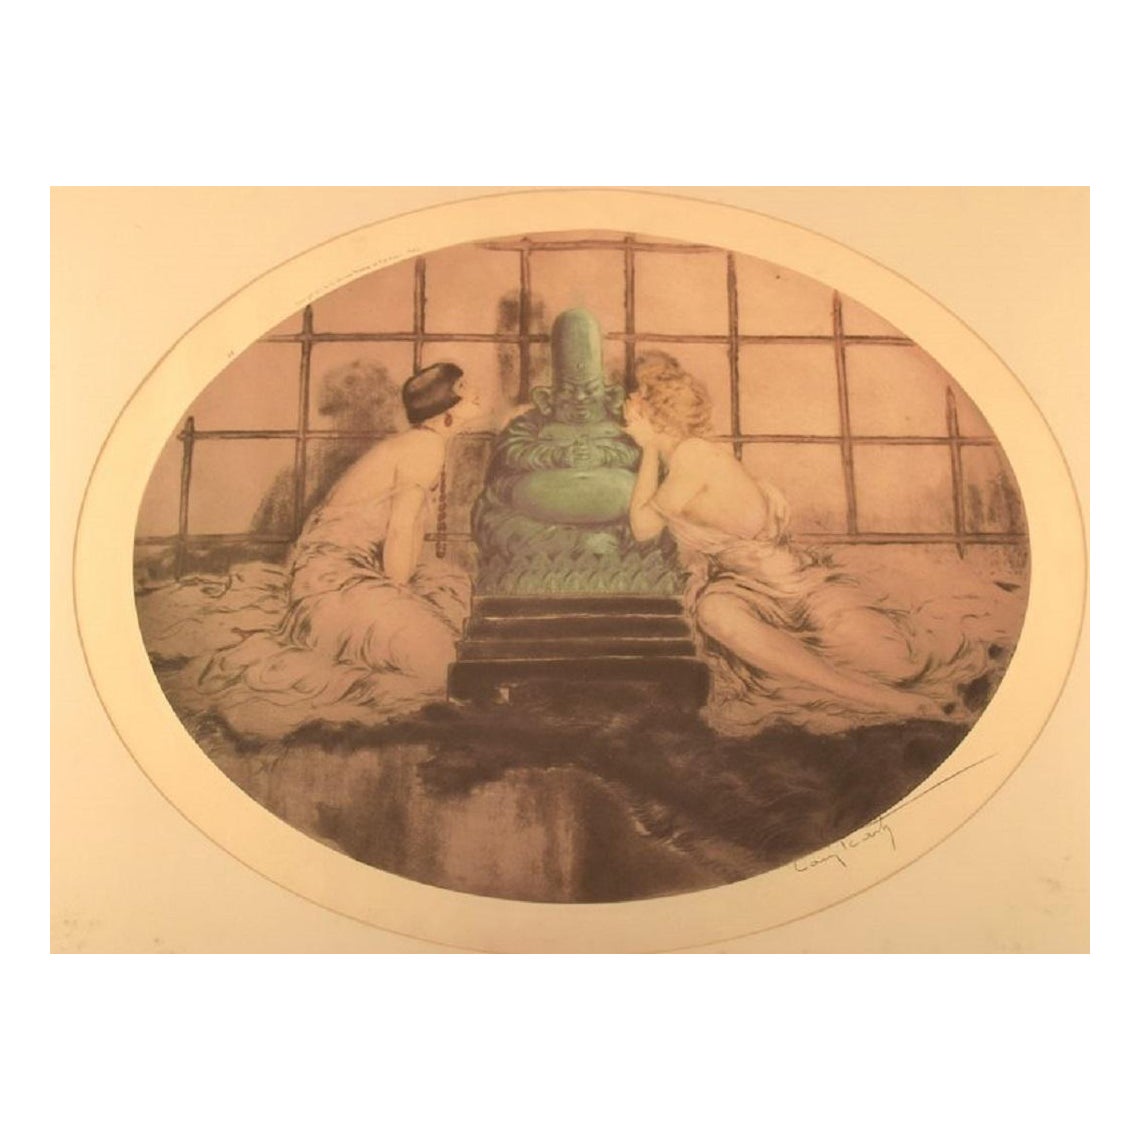 Louis Icart (1888-1950). Ätzung auf Papier. Frauen und Buddha. 1920 / 30's.